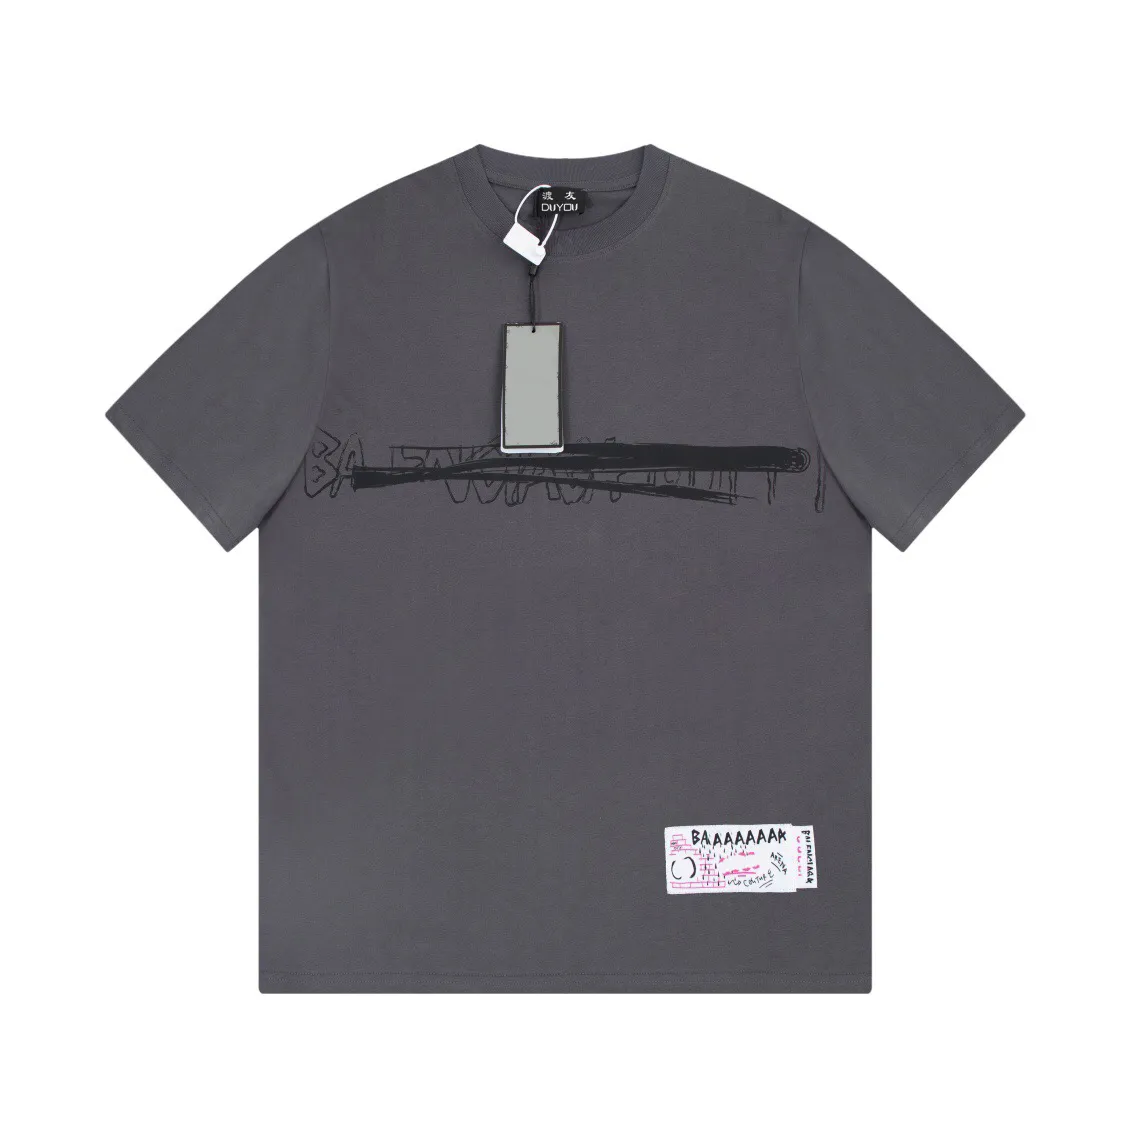 DUYOU T-shirt surdimensionné avec lettres de lavage en jersey vintage 100% coton T-shirt hommes occasionnels T-shirts de base femmes qualité classique hauts DY8870